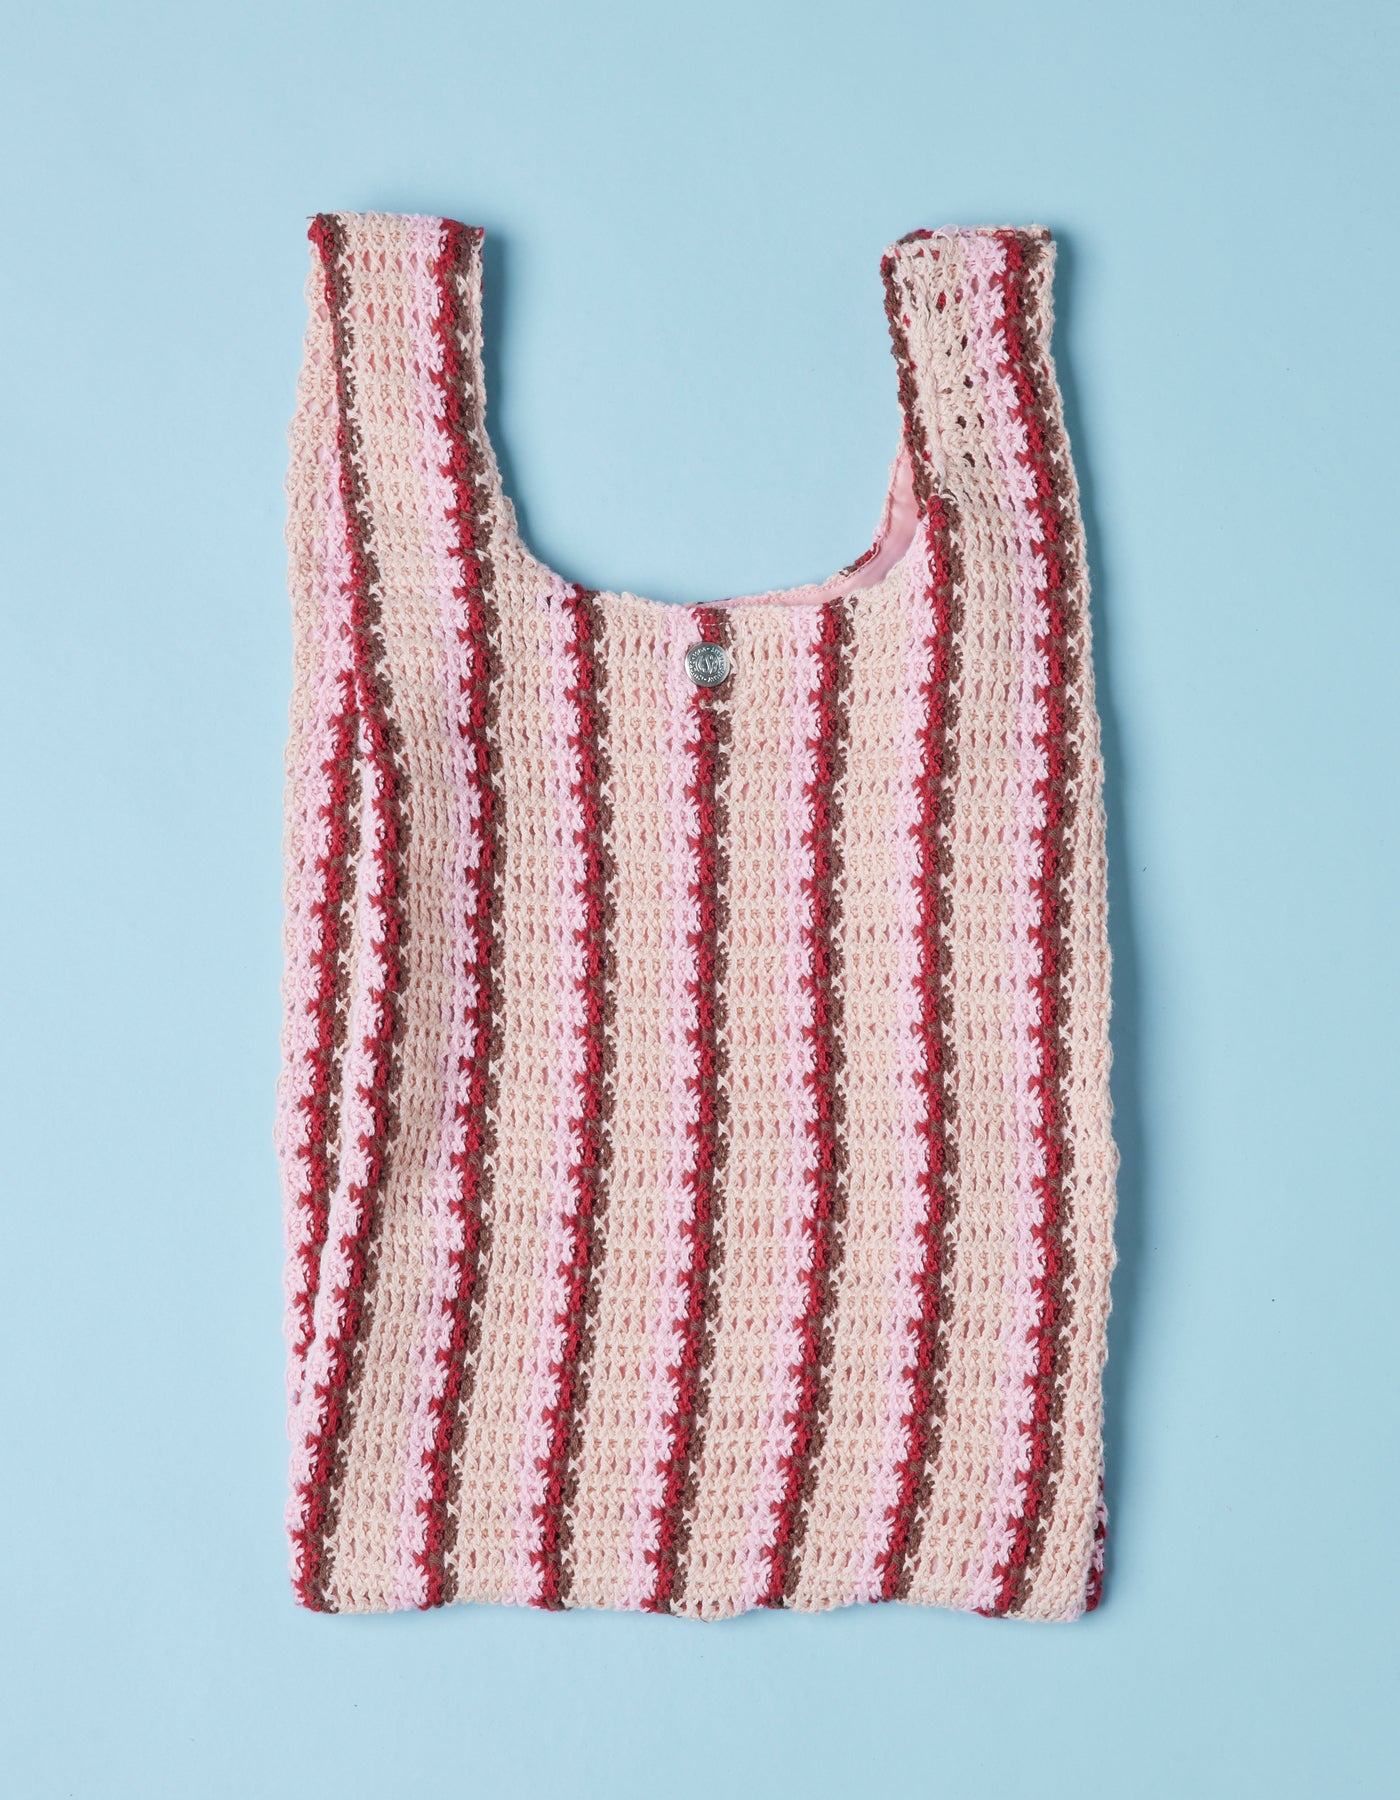 Knitting bag / PINK